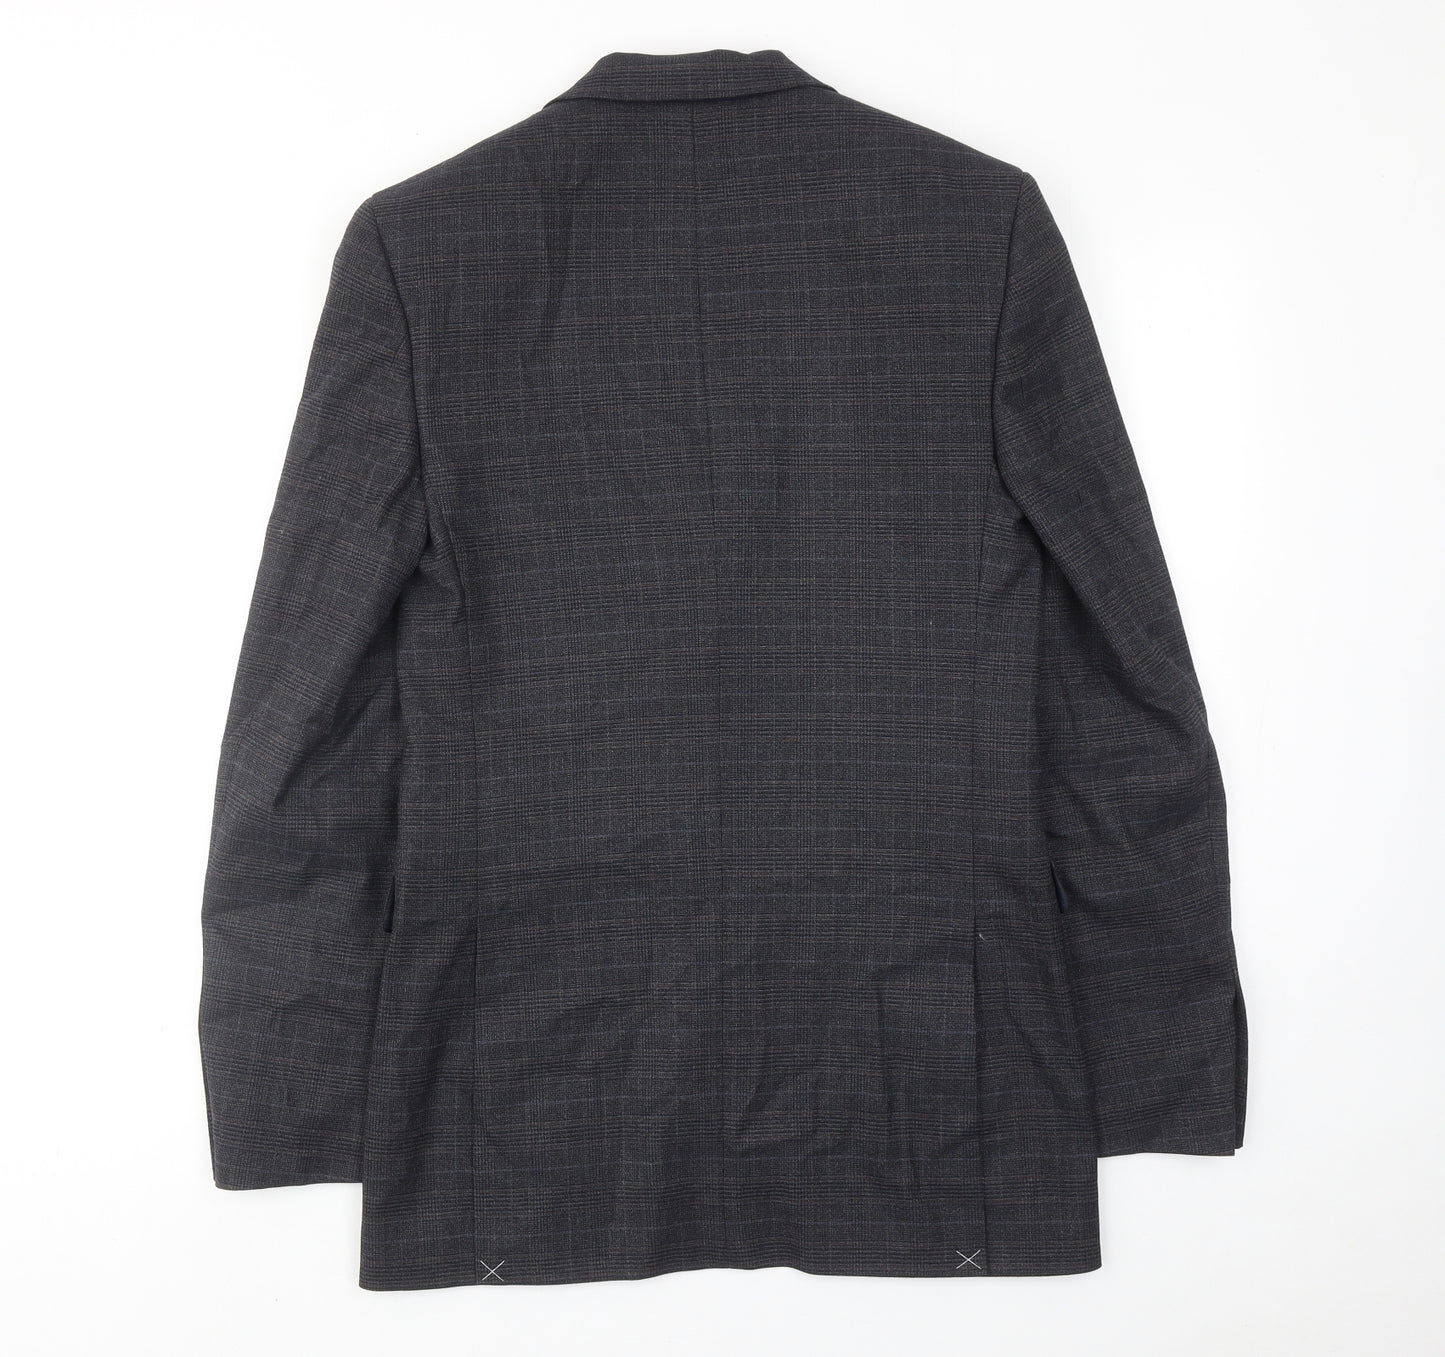 Marks and Spencer Mens Blue Plaid Polyester Jacket Suit Jacket Size 36 Regular